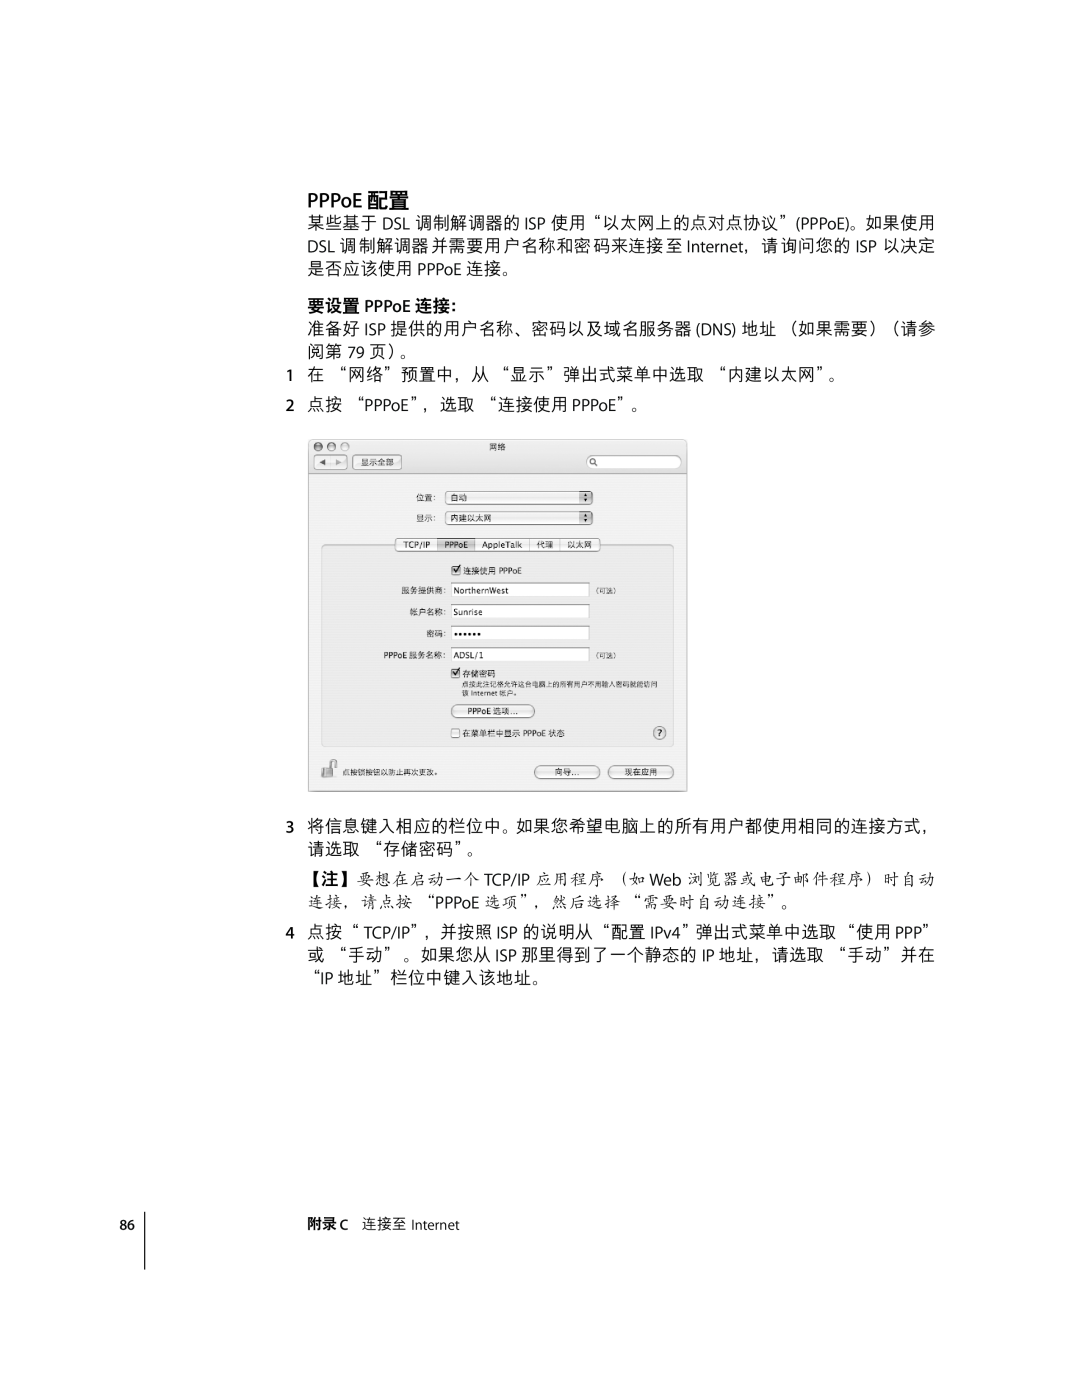 Apple G4 12 manual PPPoE xz, 4˜z PPPoE 